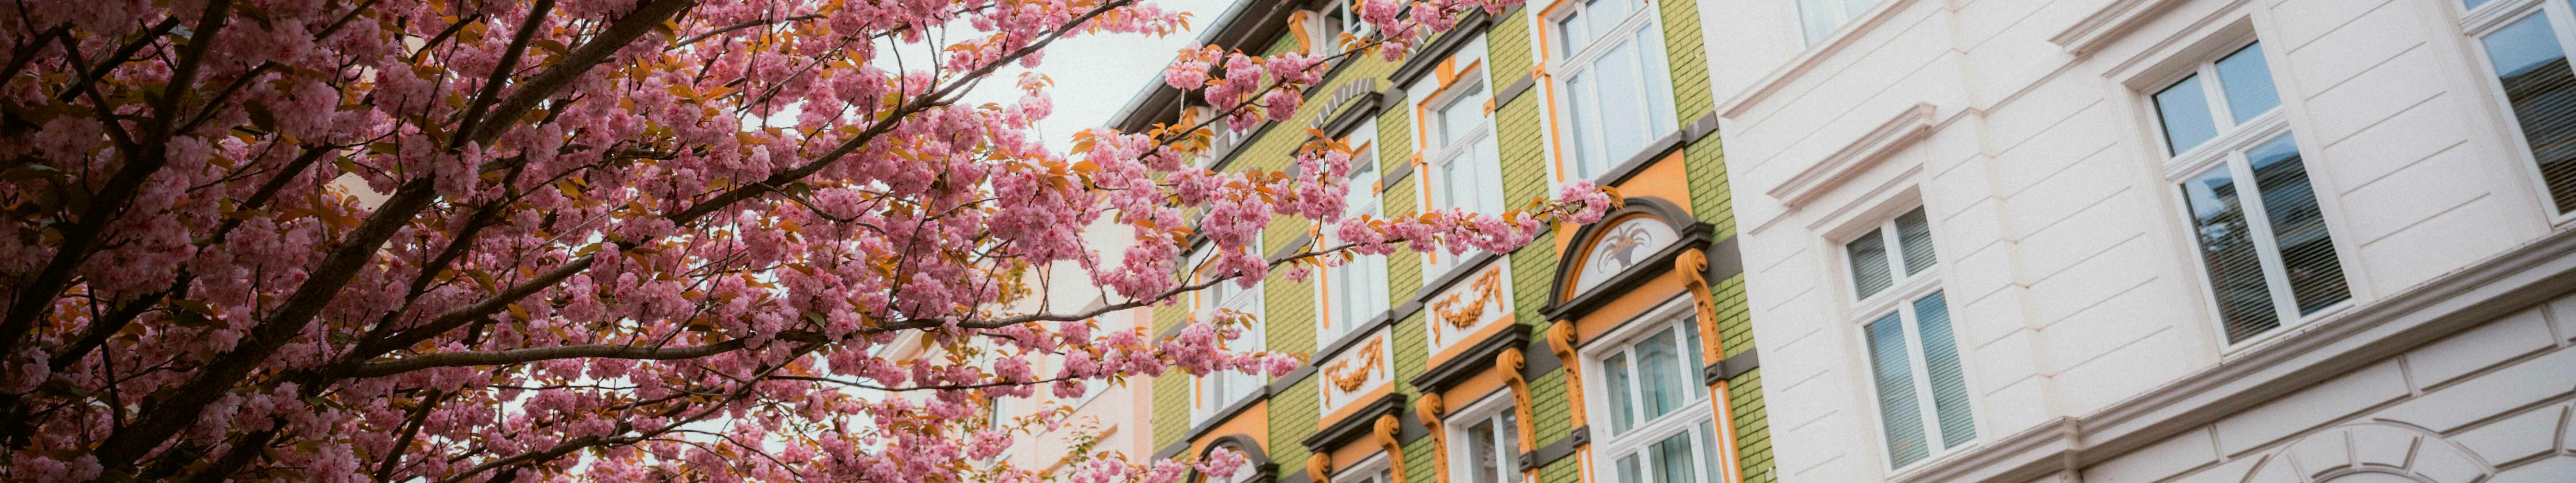 Altbauten in Bonn mit einem blühenden Kirschbaum davor